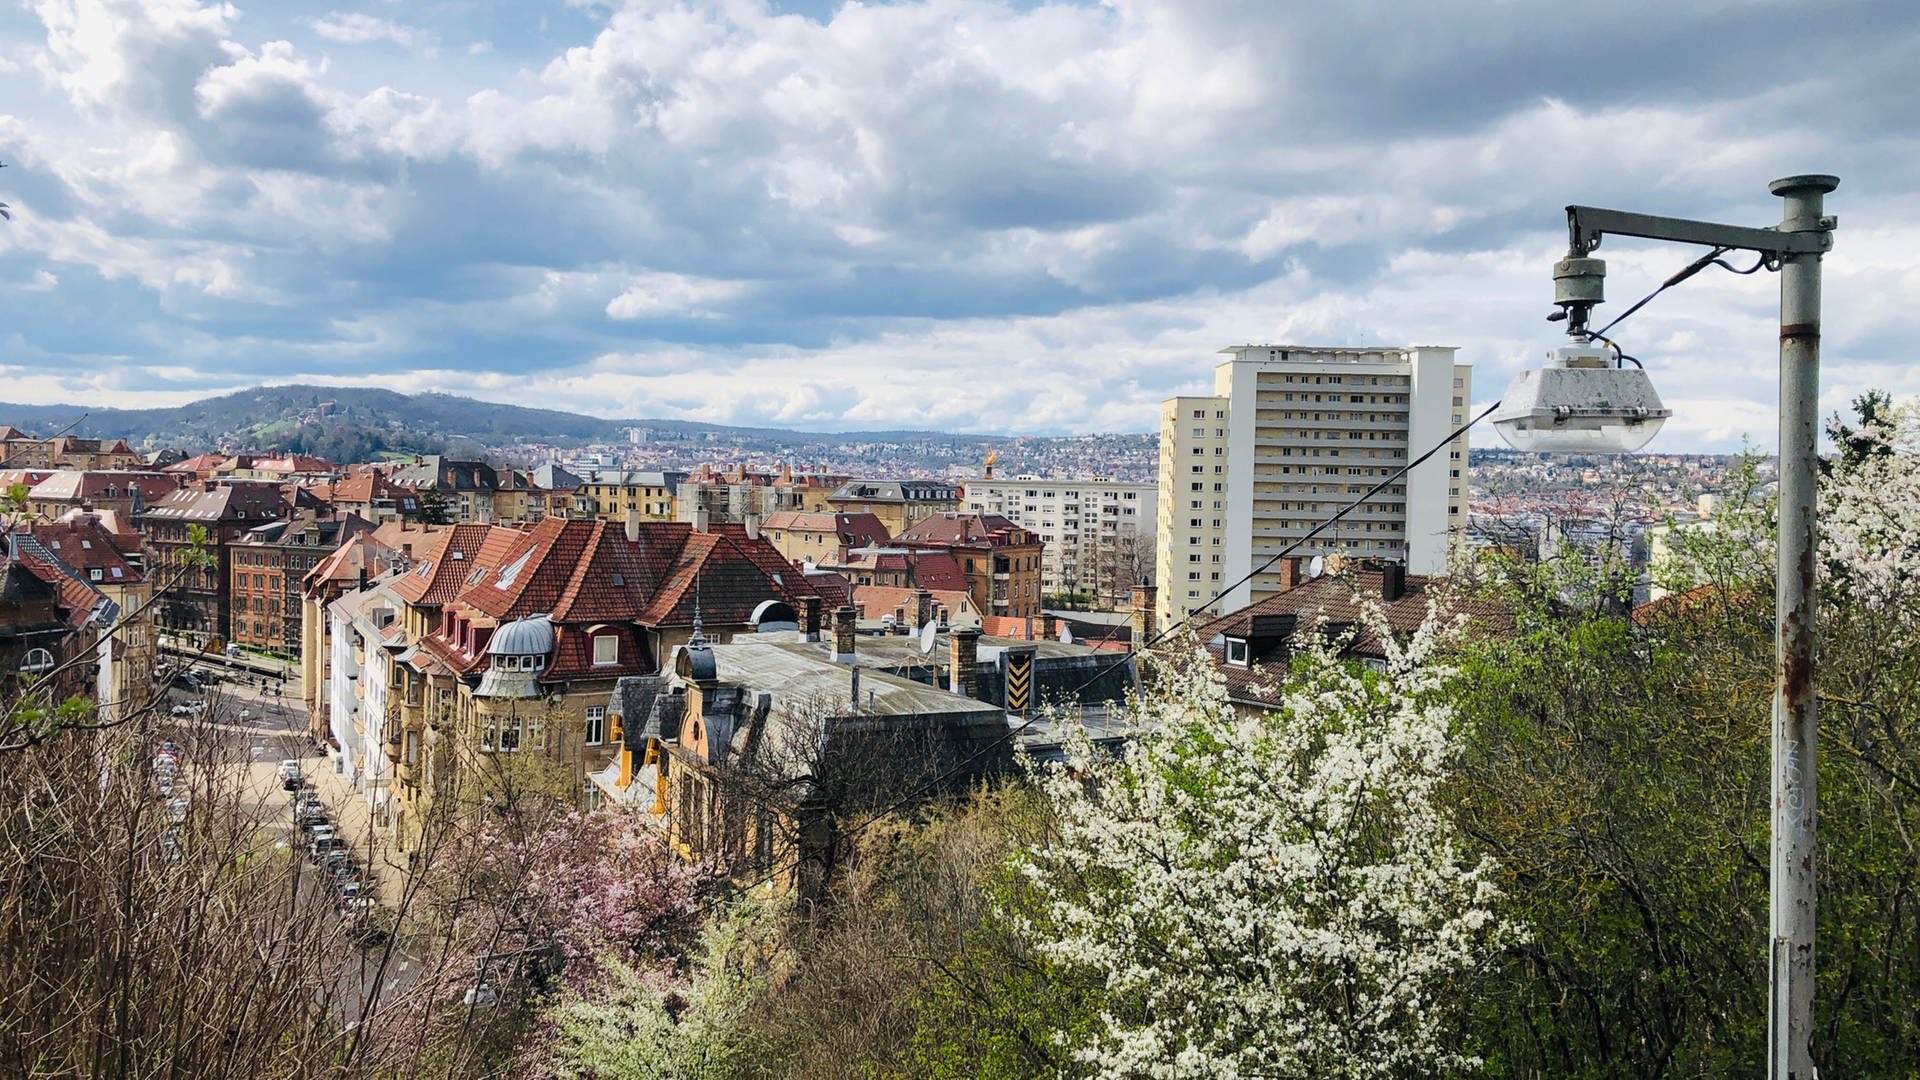 Wohnung gesucht in Stuttgart: Das muss man wissen